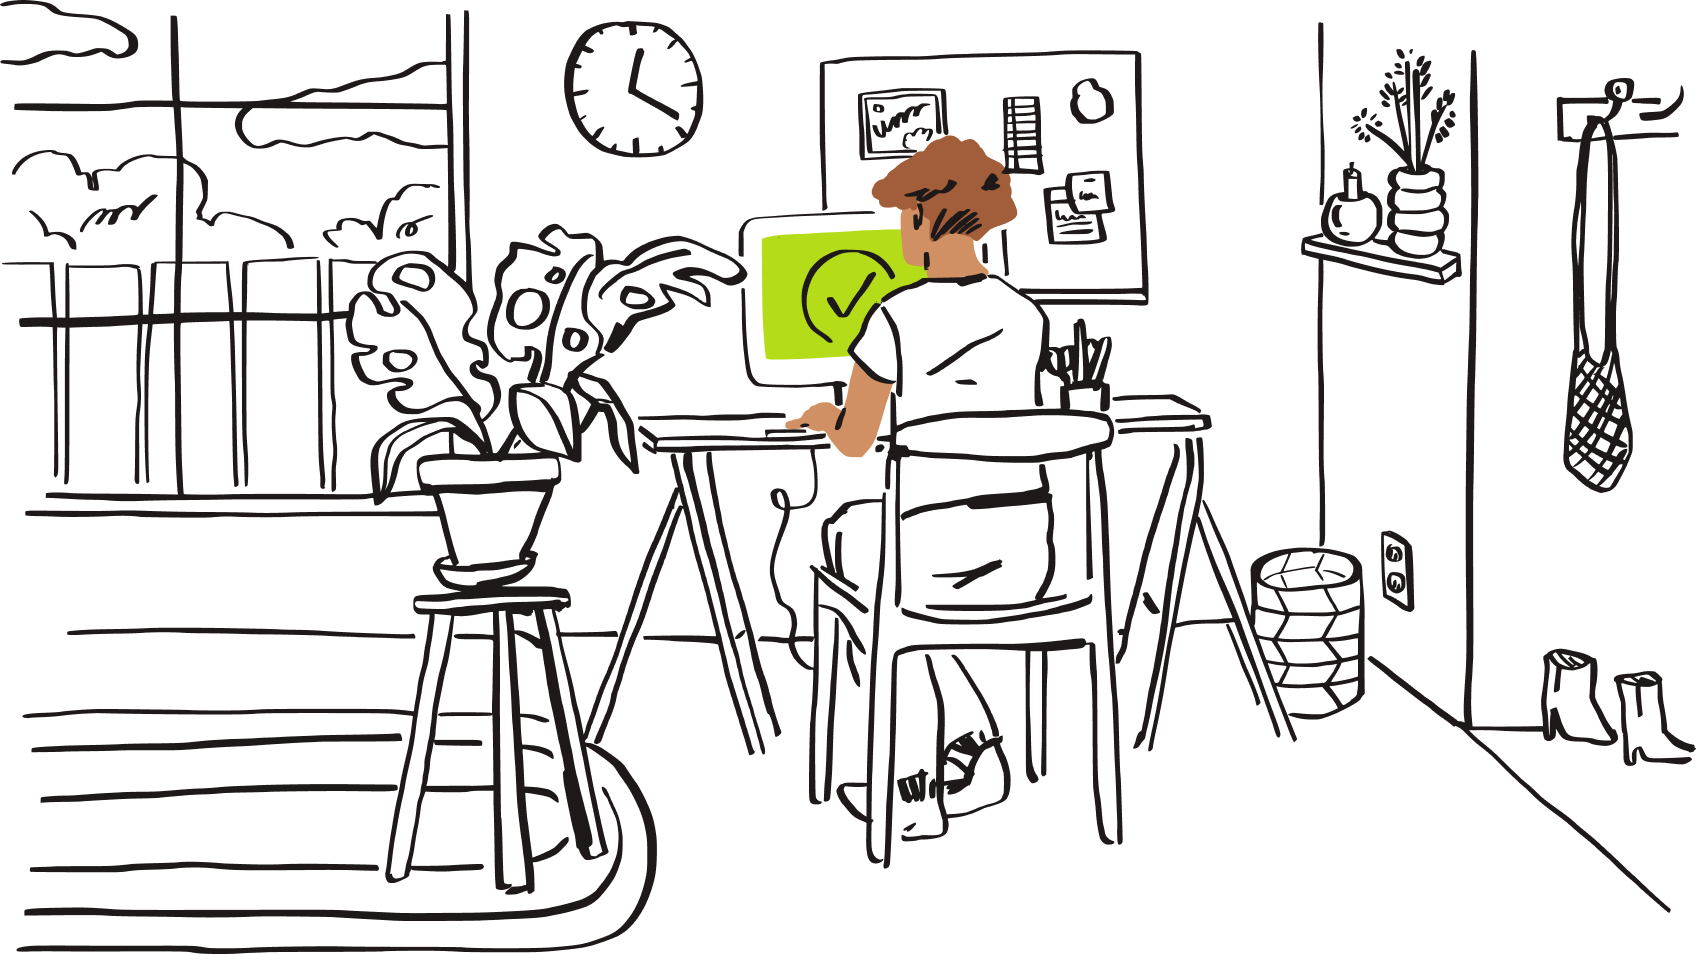 Ilustracja przedstawiająca osobę siedzącą przy komputerze z zielonym znacznikiem wyboru widocznym na ekranie.